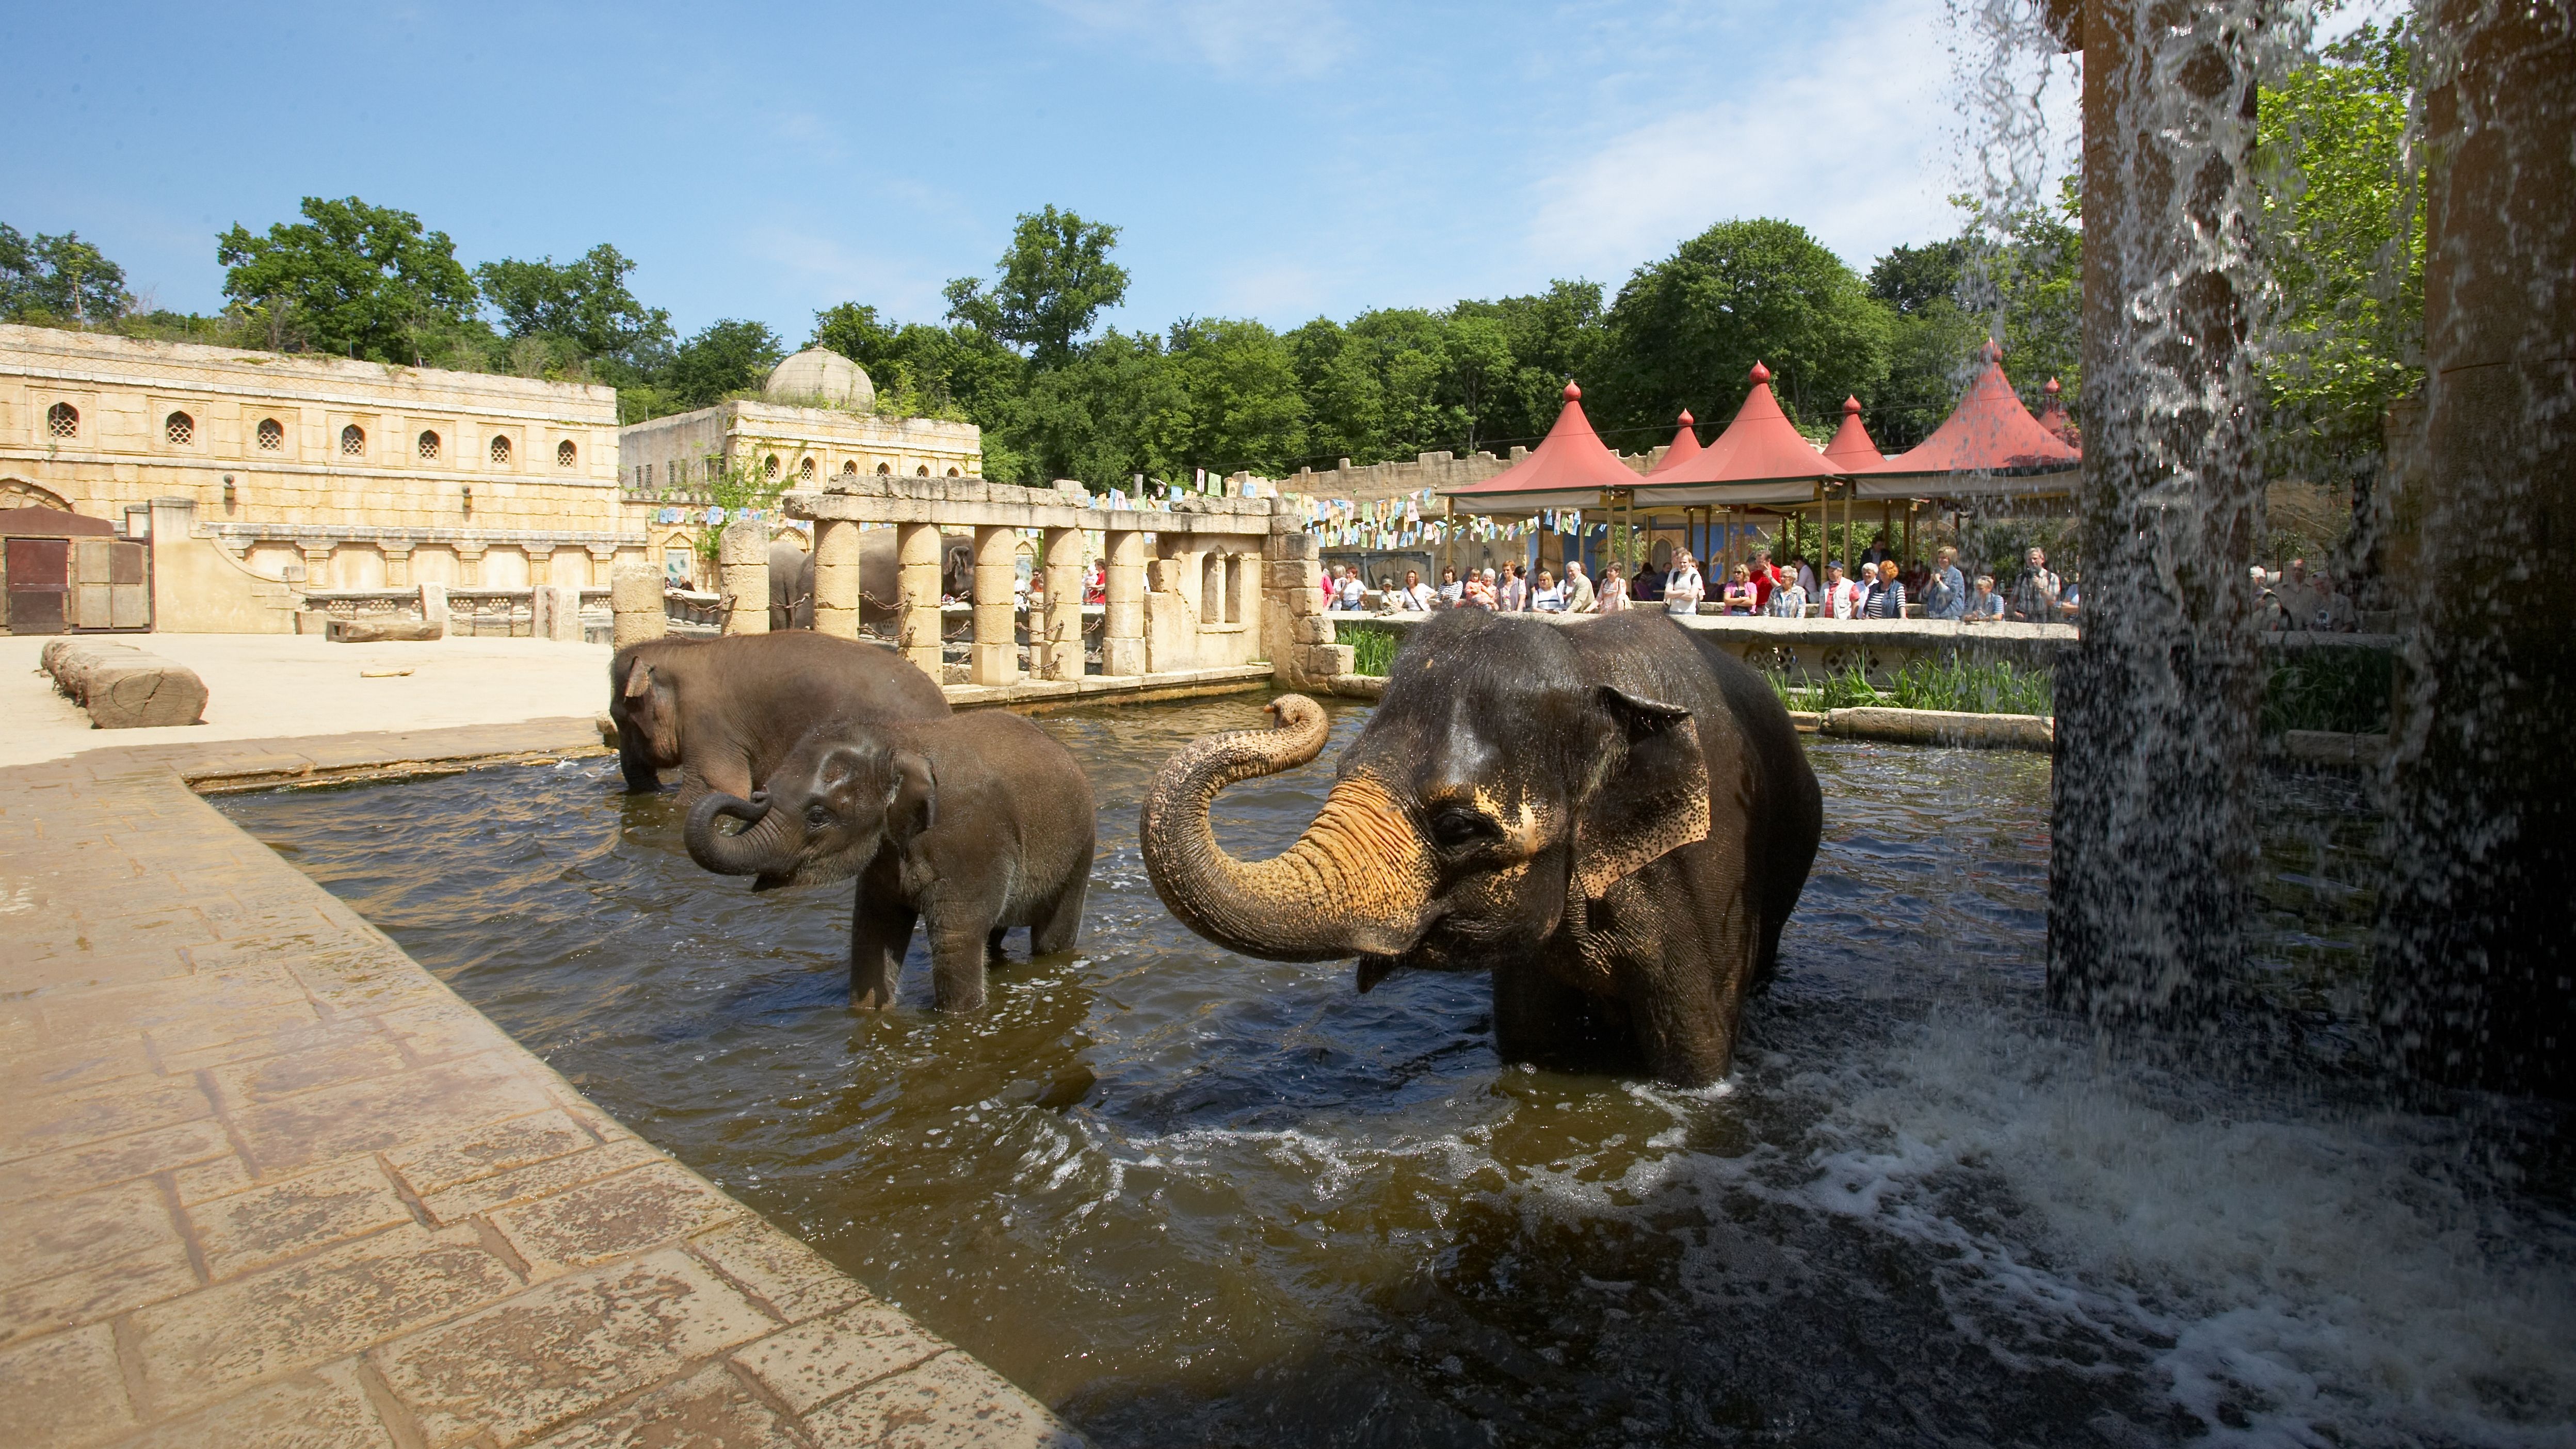 Elefanten baden im Erlebnis-Zoo Hannover